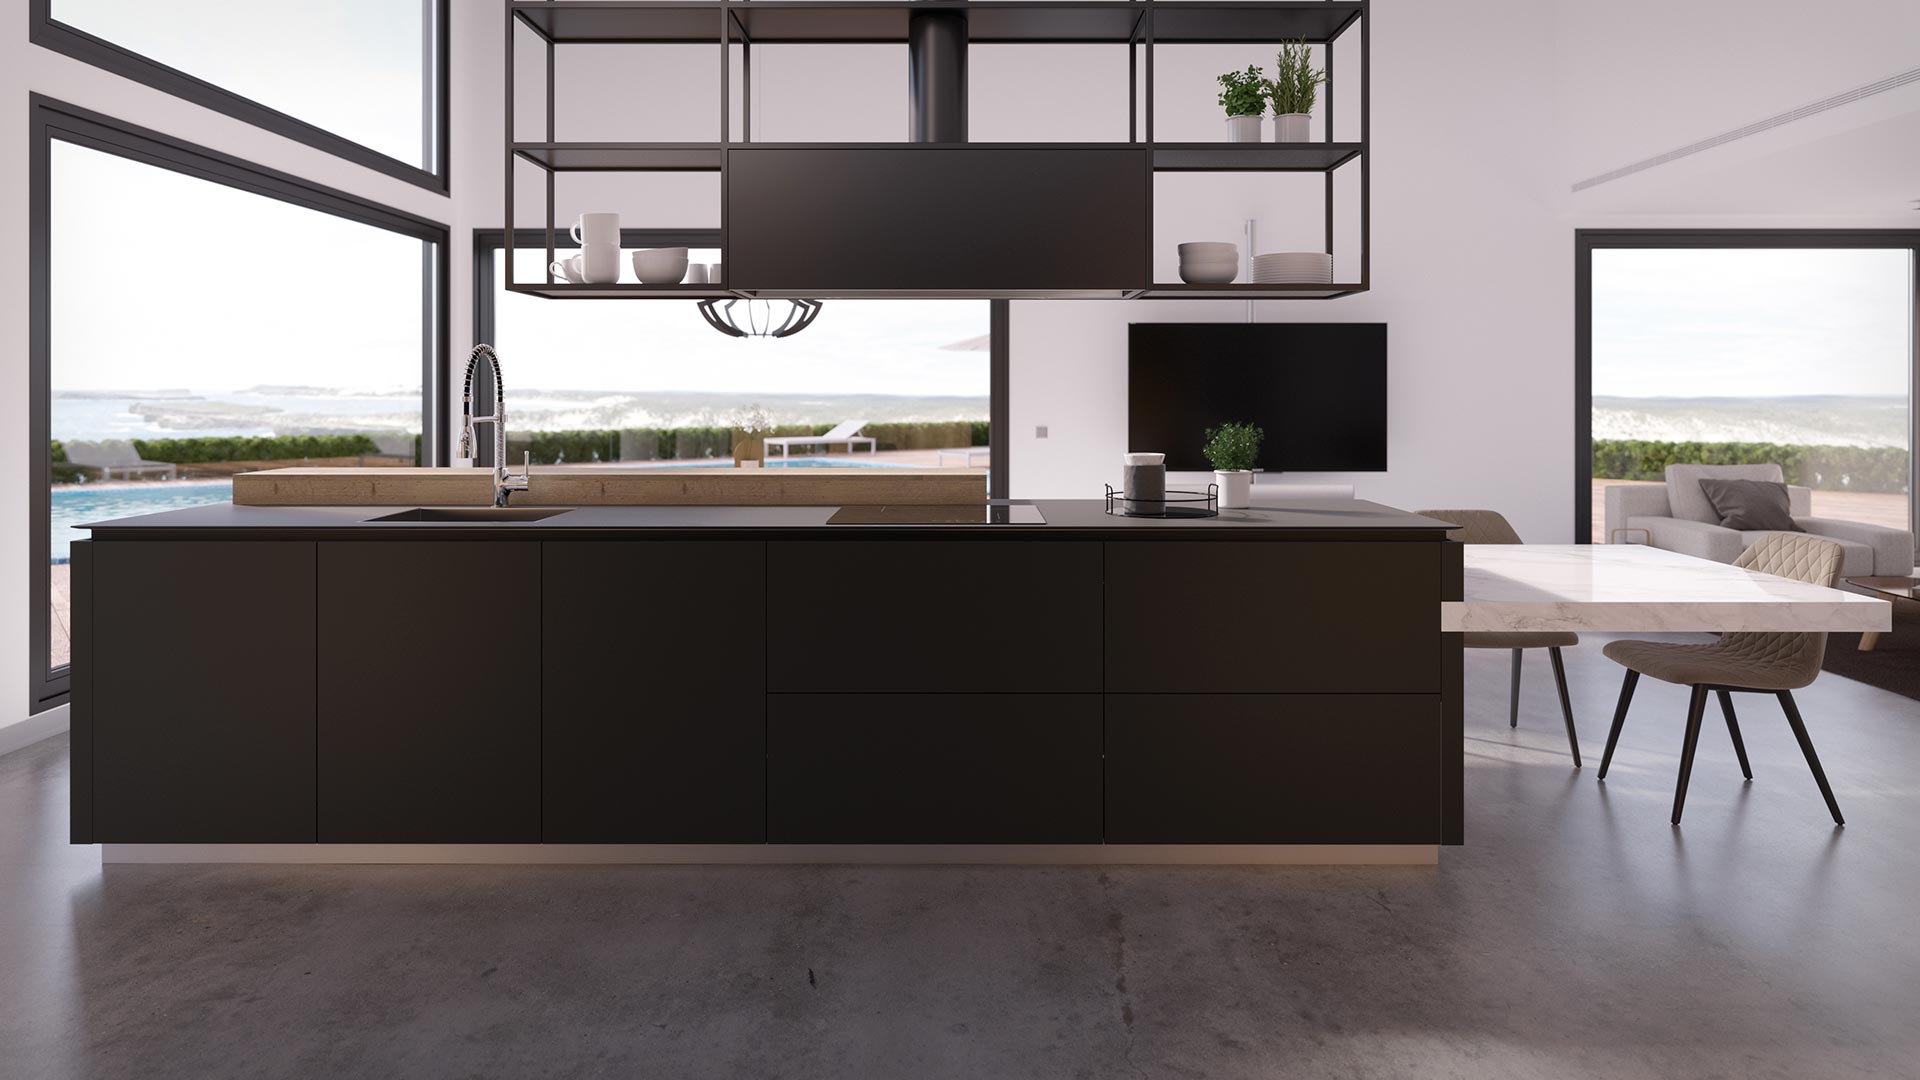 Muebles de cocina minimalistas en una amplia sala con tonos negros, blancos y detalles en madera